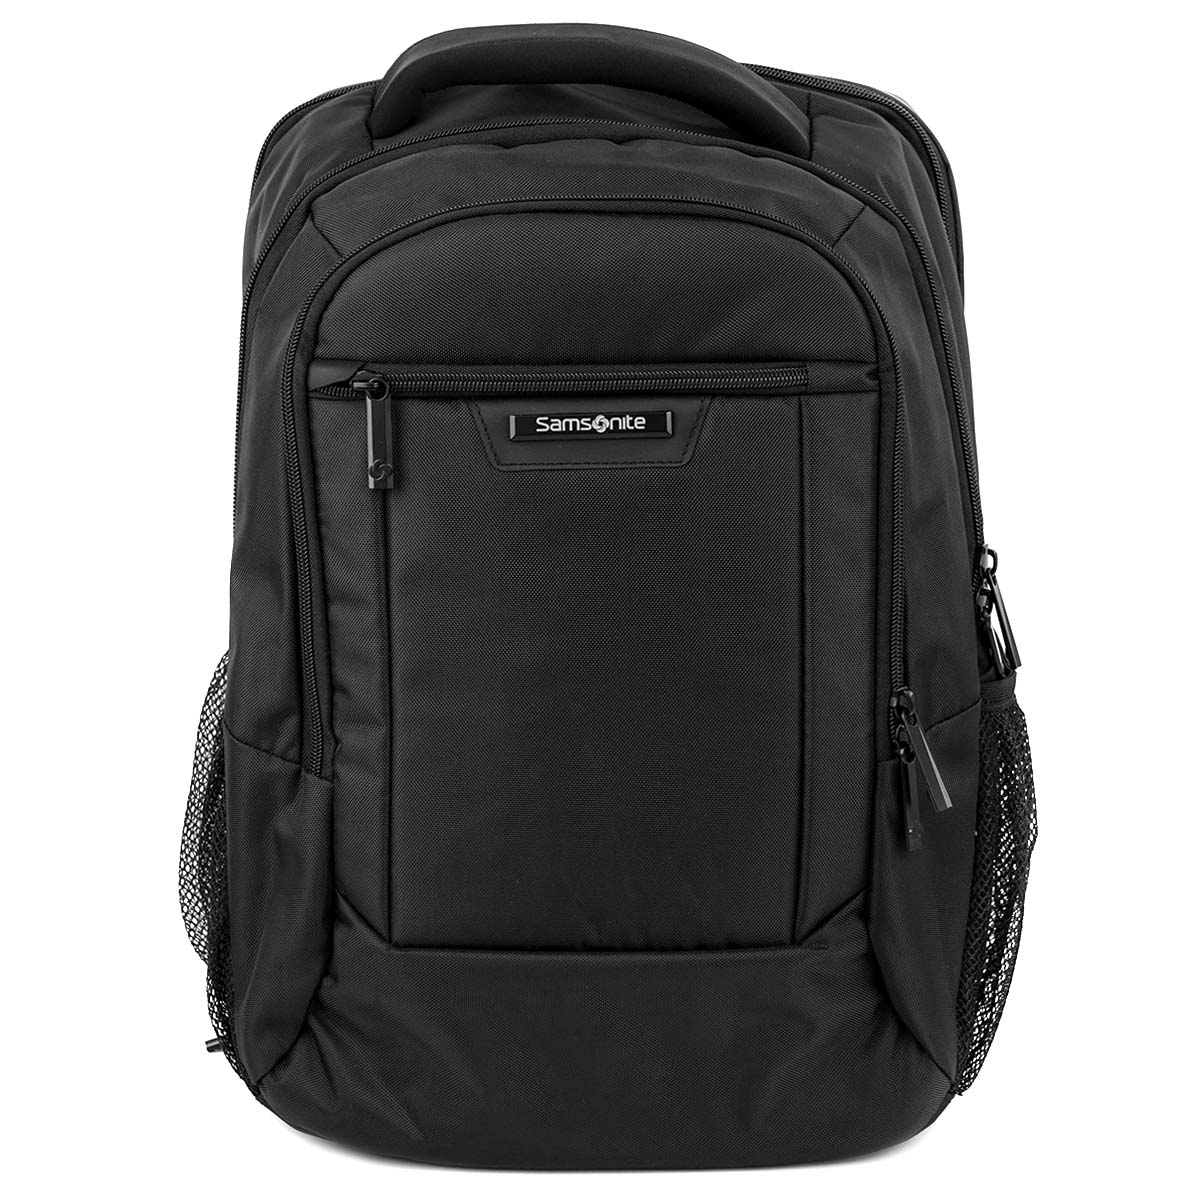 サムソナイト リュック メンズ 【後払い可】バックパック samsonite サムソナイト 141277-1041 CLASSIC 2.0 Standard Backpack(15.6) メンズ 男性 ビジネスバッグ リュック BLACK ブラック